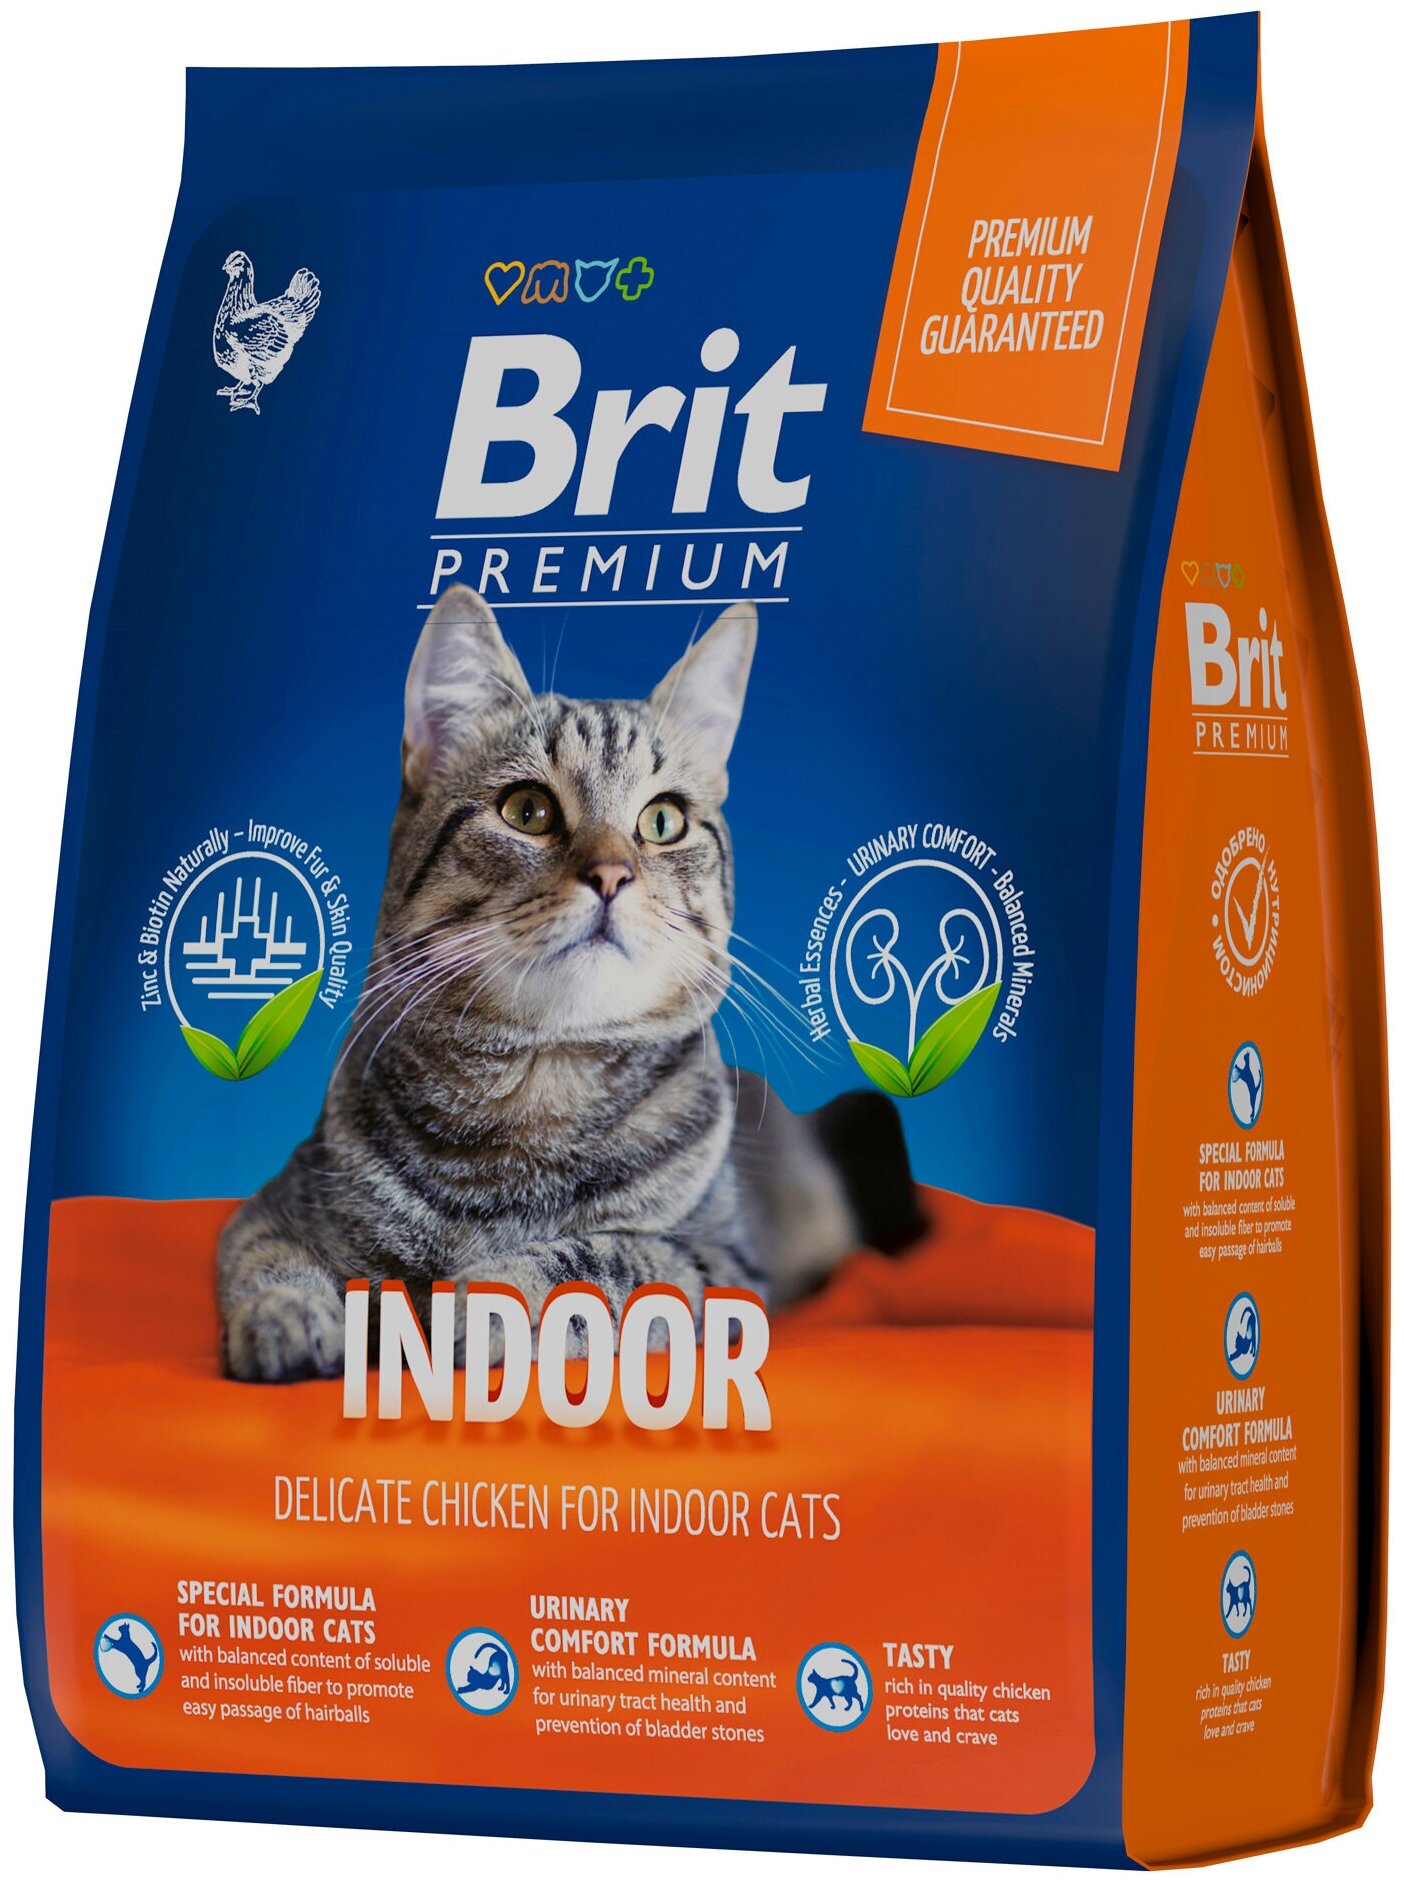 Сухой корм Brit Premium Cat Indoor премиум класса для домашних кошек с курицей 2кг